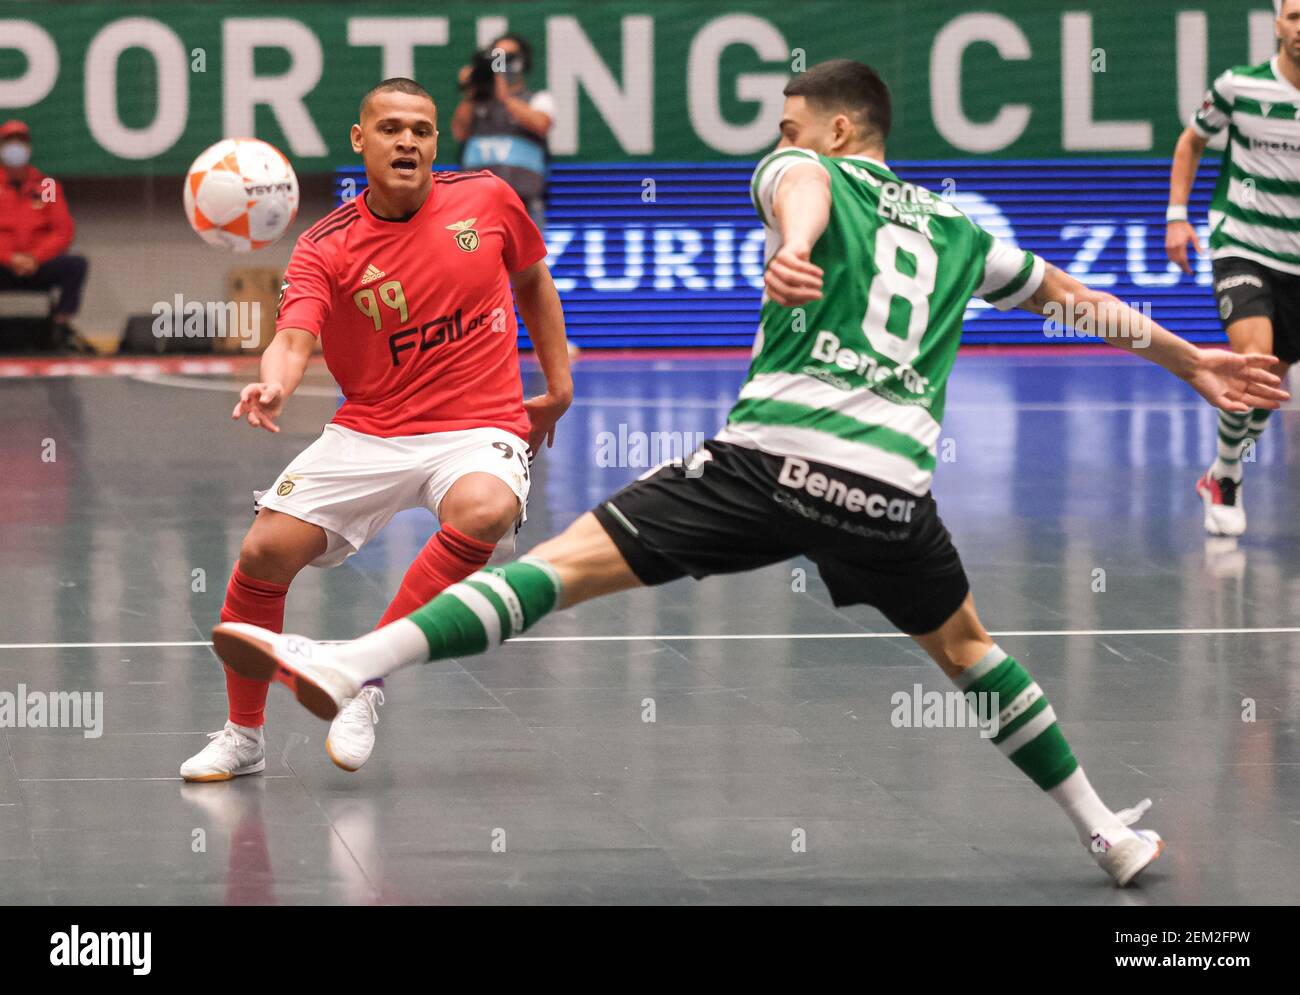 Futsal  Site oficial do Sporting Clube de Portugal